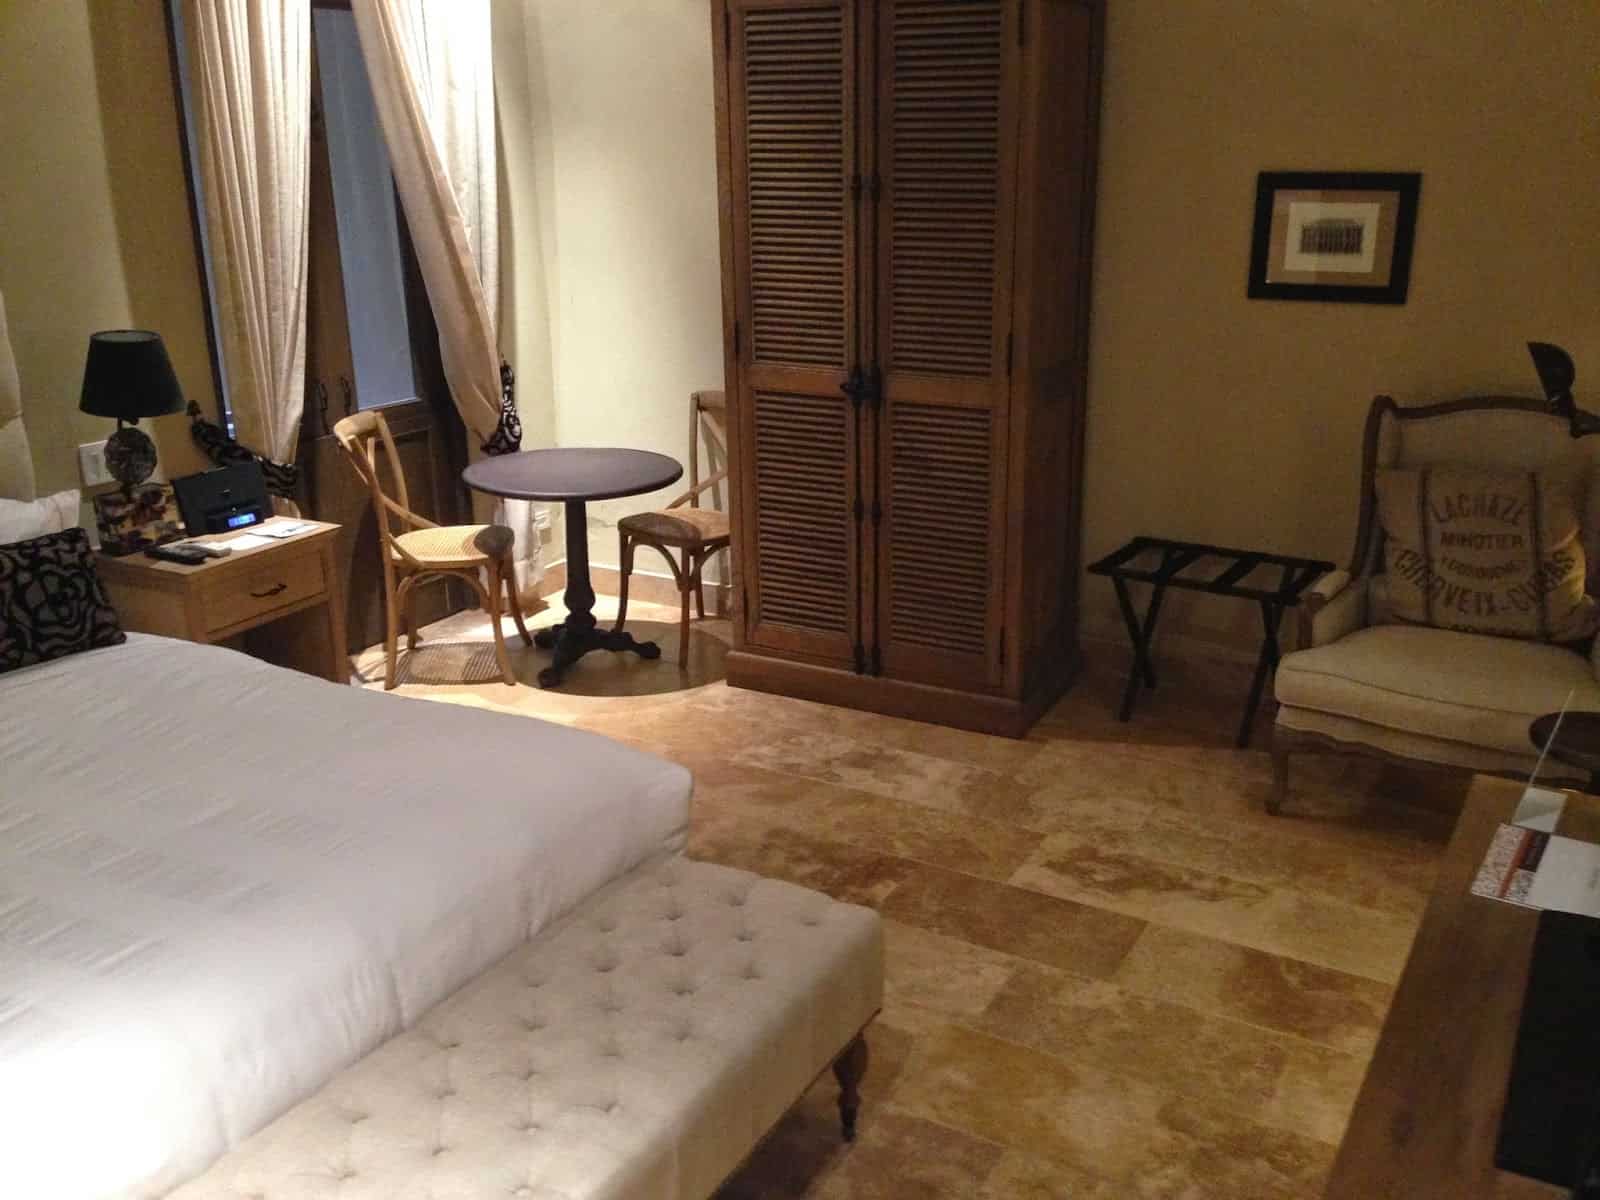 My room at Bastión Luxury Hotel in Cartagena, Colombia